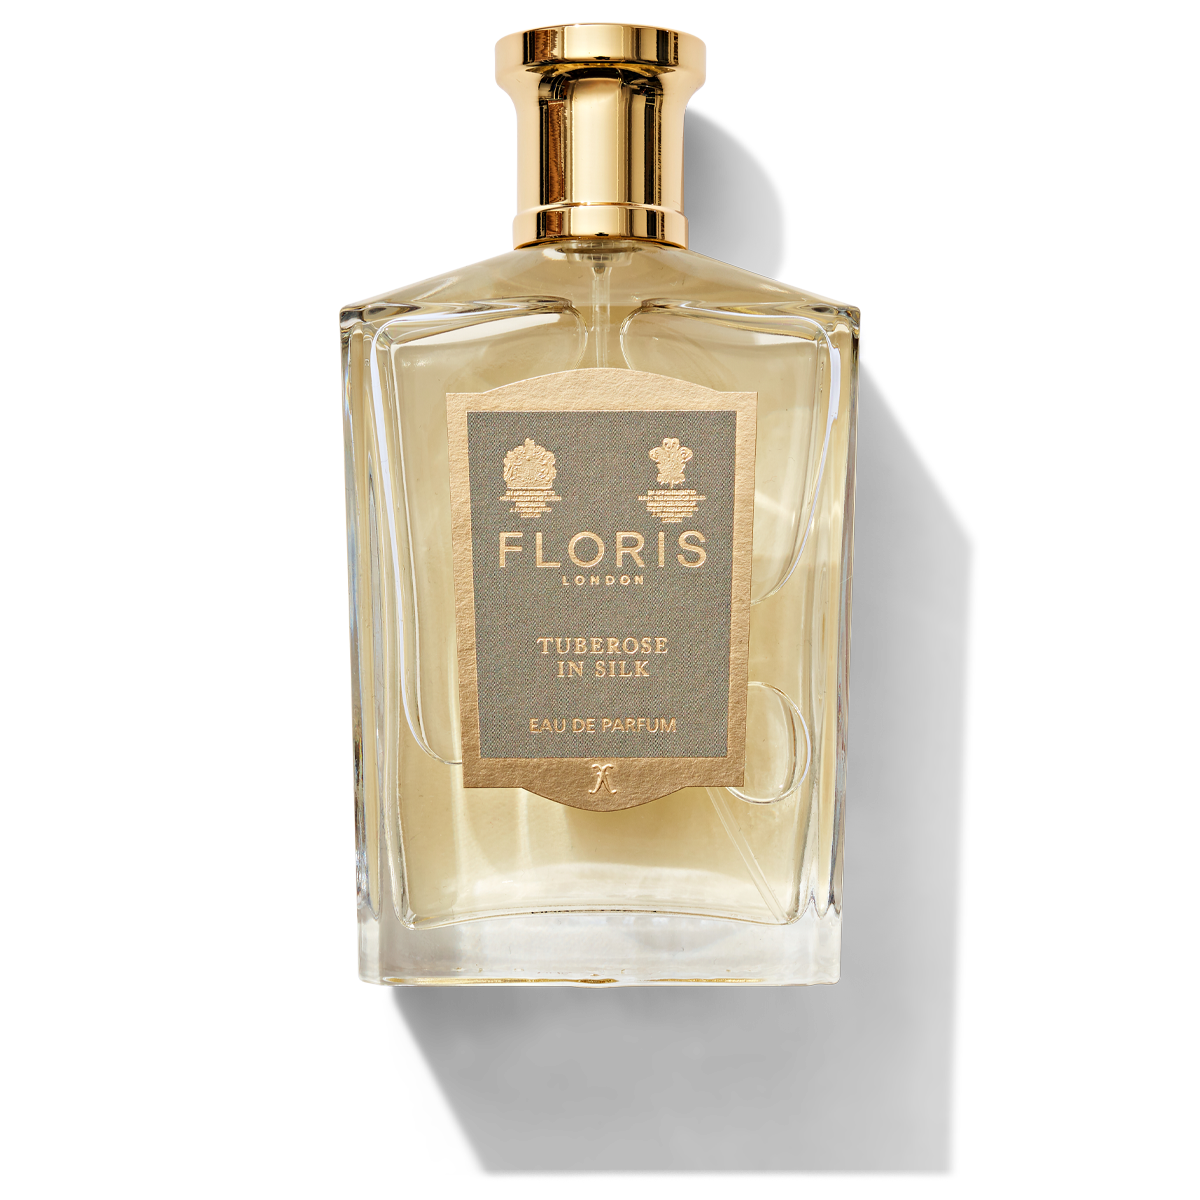 100ml Floris london perfume bottle with tuberose in silk label